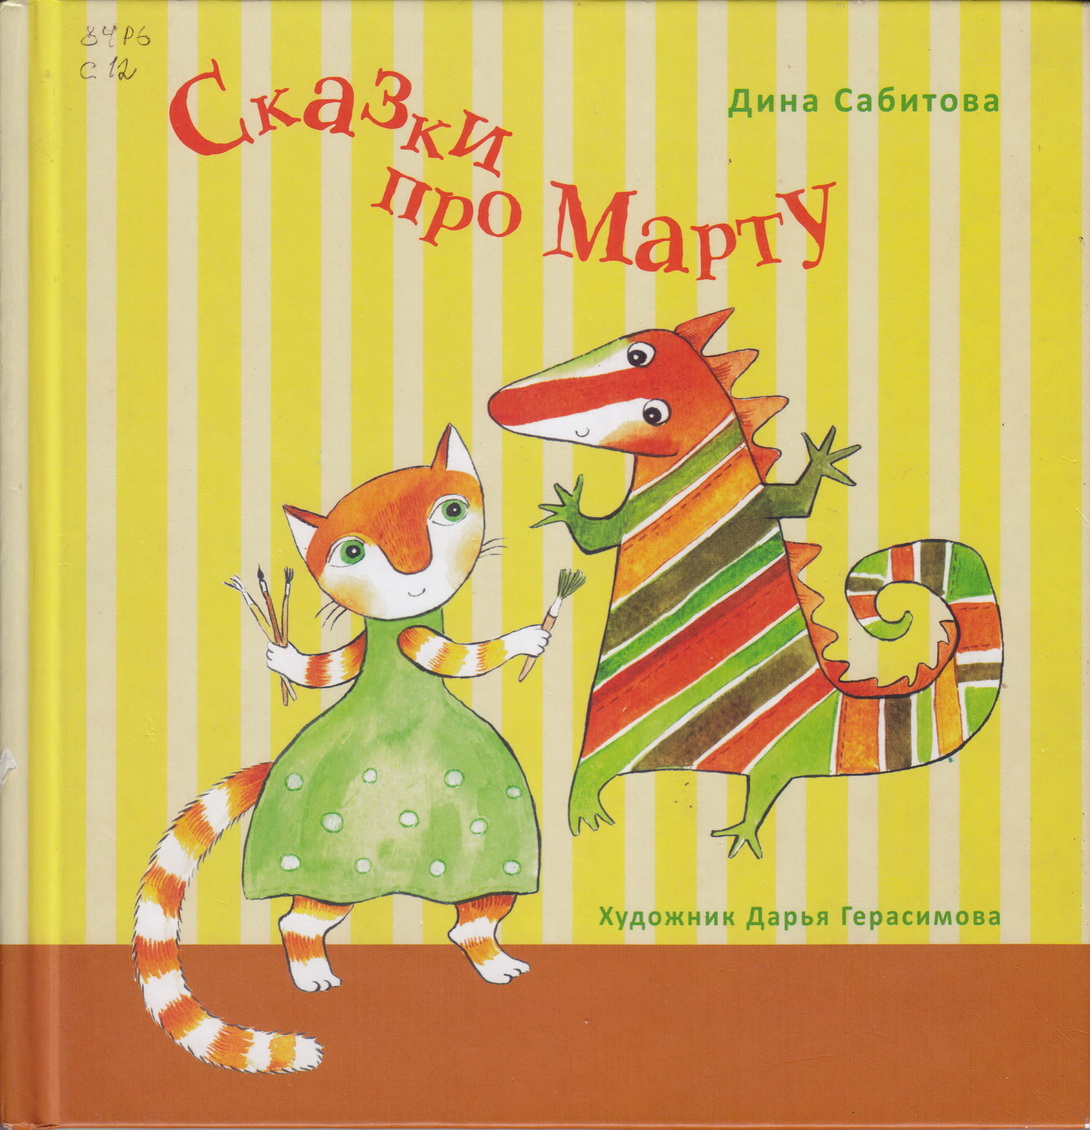 Нажмите для увеличения. Сабитова, Д. Р. Сказки про Марту (фото обложки из фонда библиотеки) 